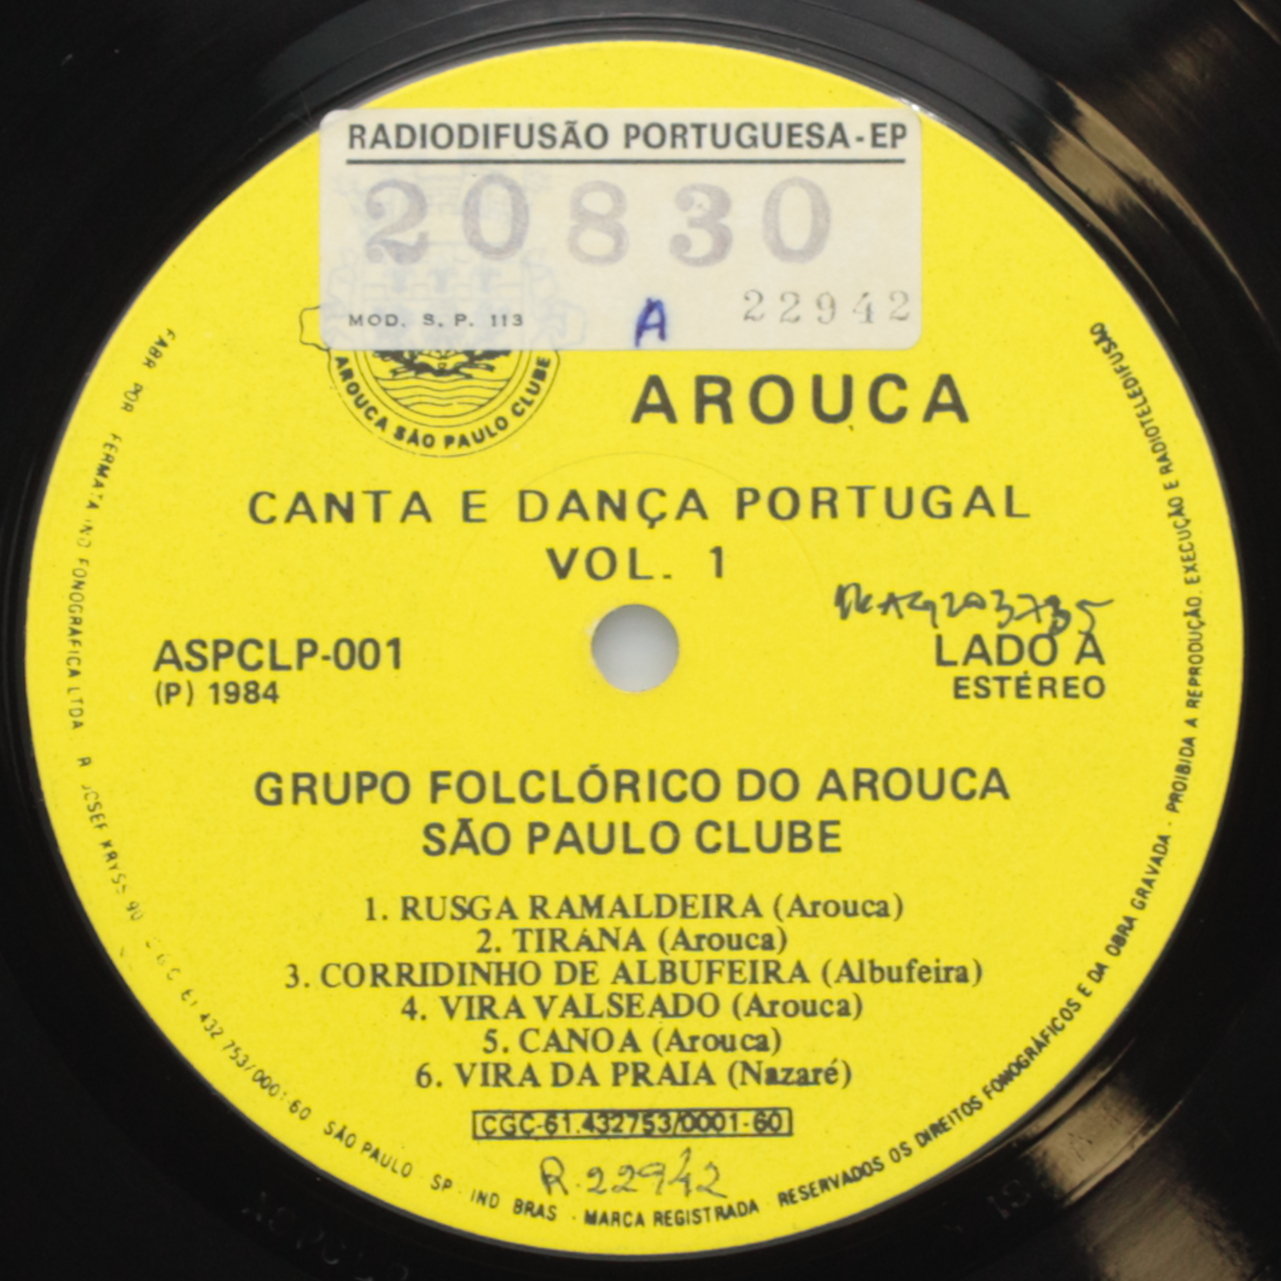 Arouca, Canta e dança Portugal Volume 1